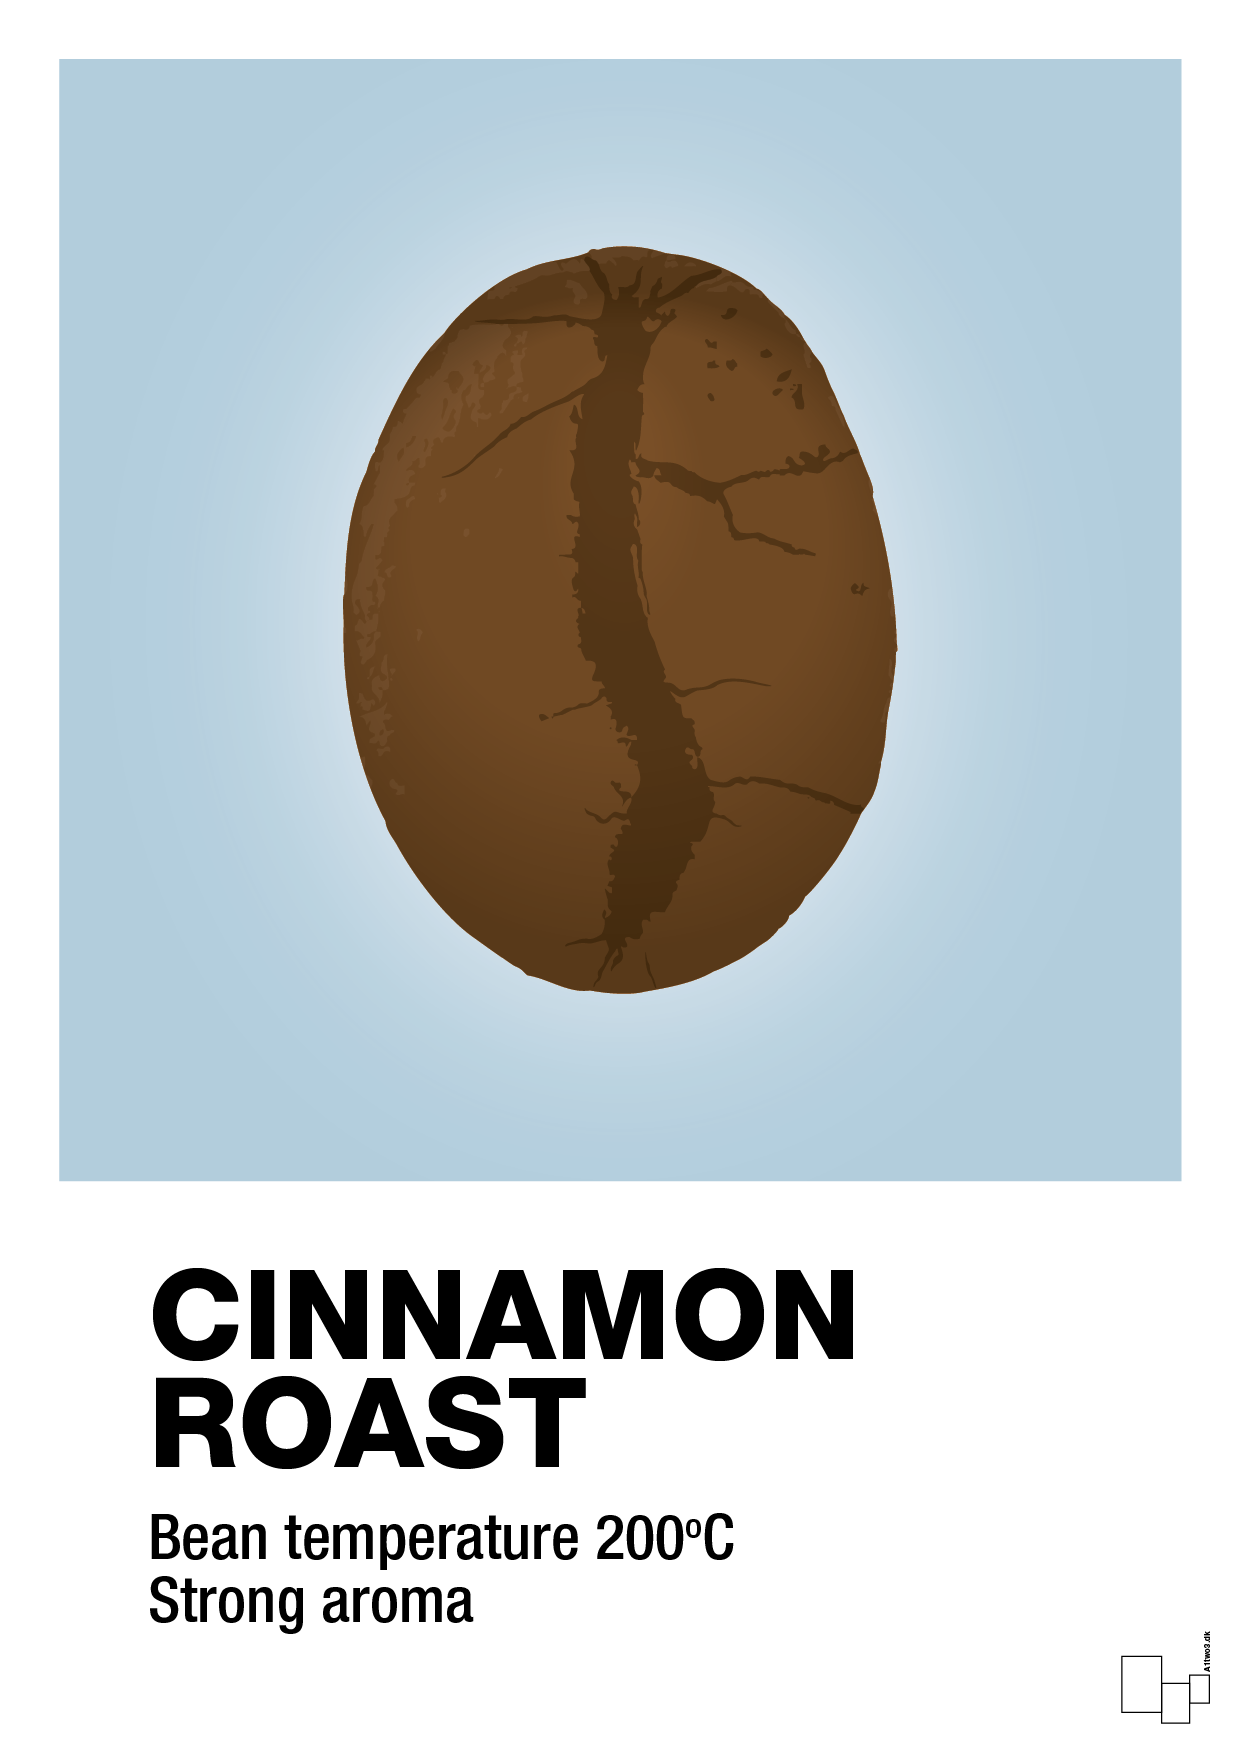 cinnamom roast - Plakat med Mad & Drikke i Heavenly Blue